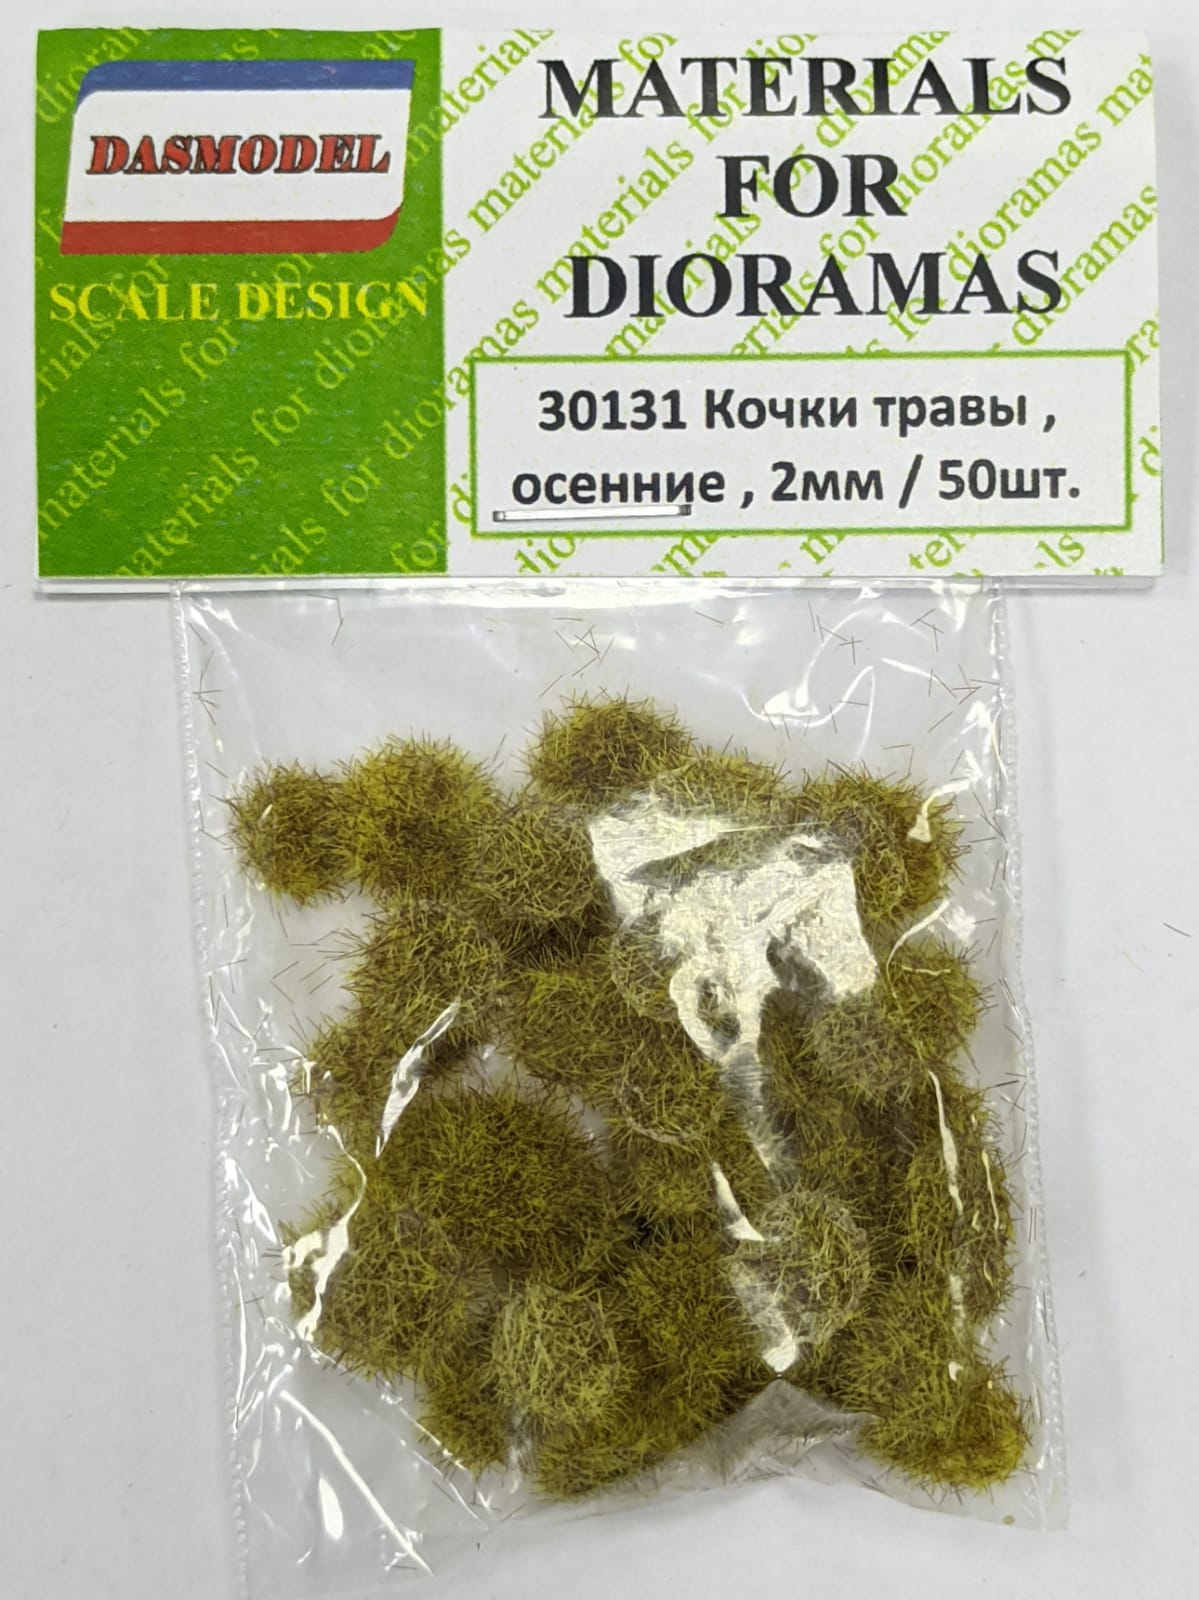 30131  материалы для диорам  Кочки травы, осенние, 2мм / 50шт